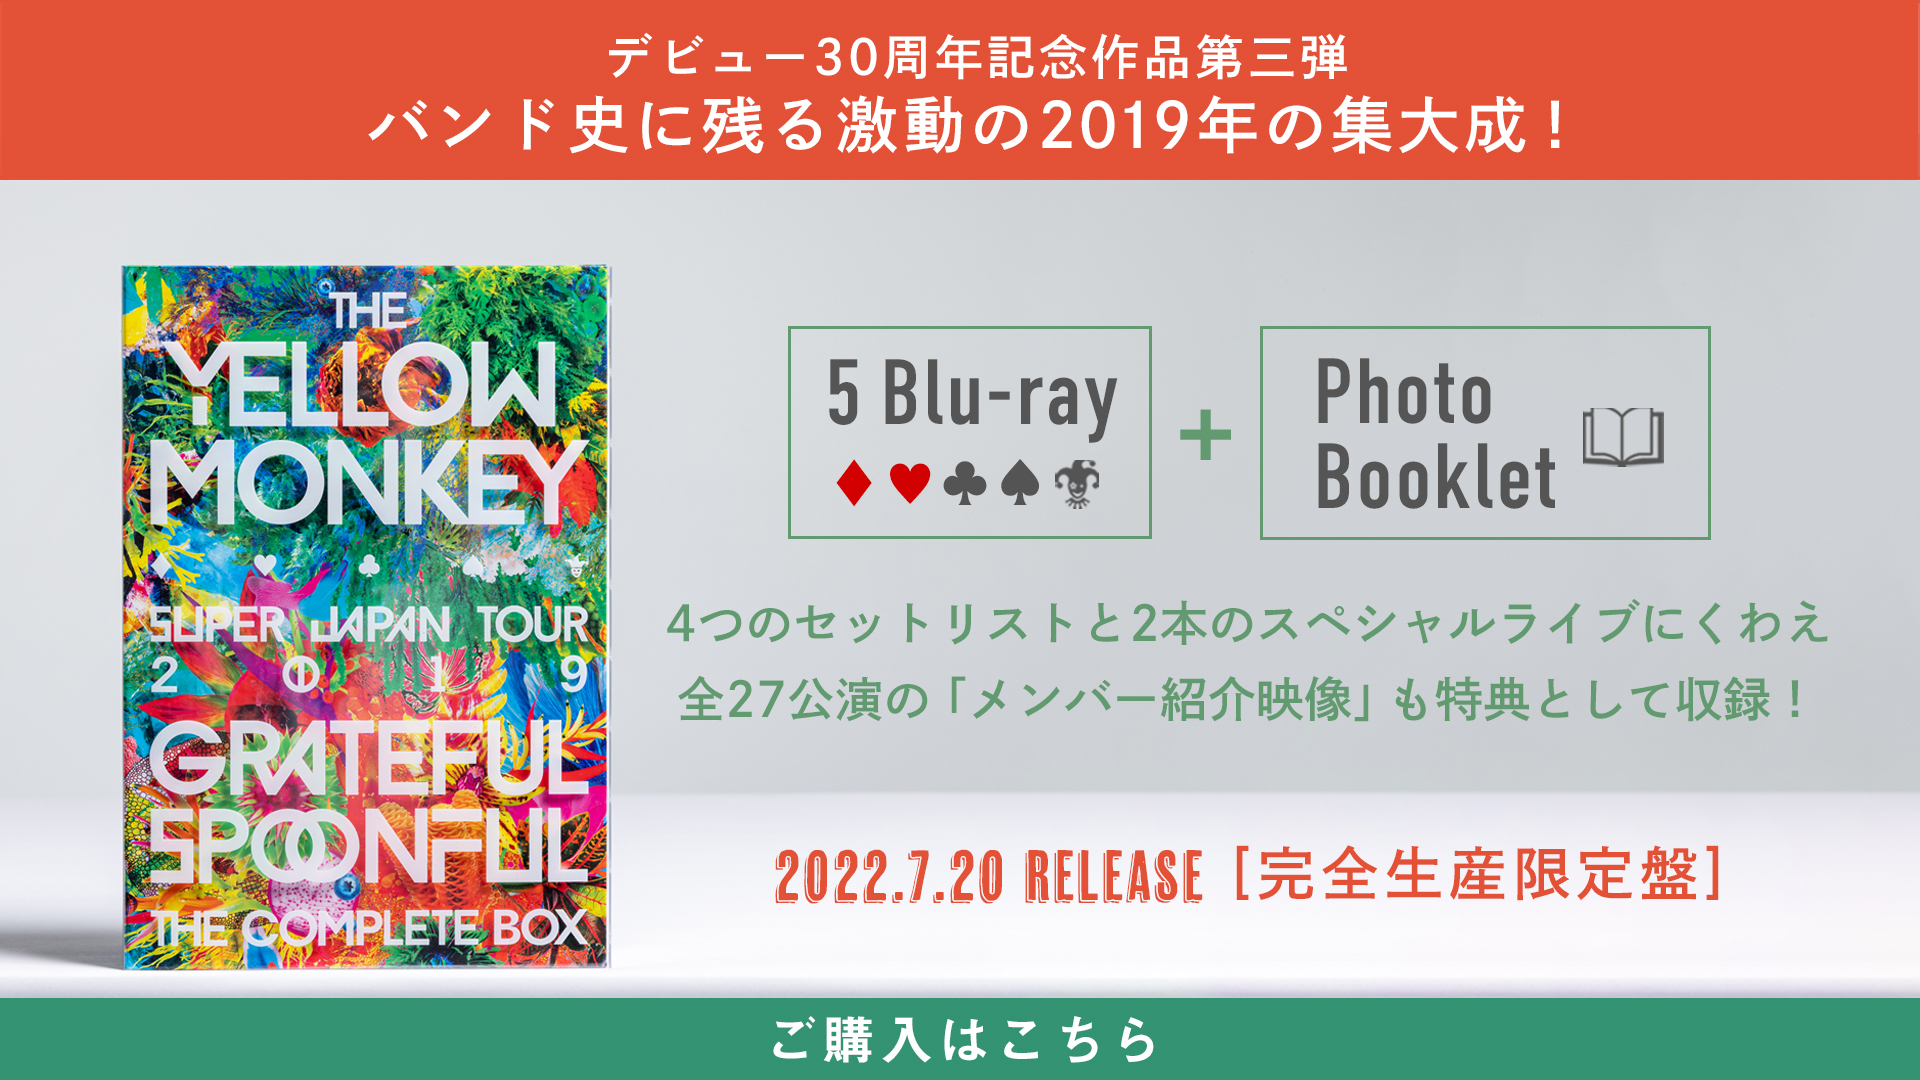 デビュー30周年記念作品第三弾「THE YELLOW MONKEY SUPER JAPAN TOUR 2019 -GRATEFUL SPOONFUL- Complete Box」リリース！